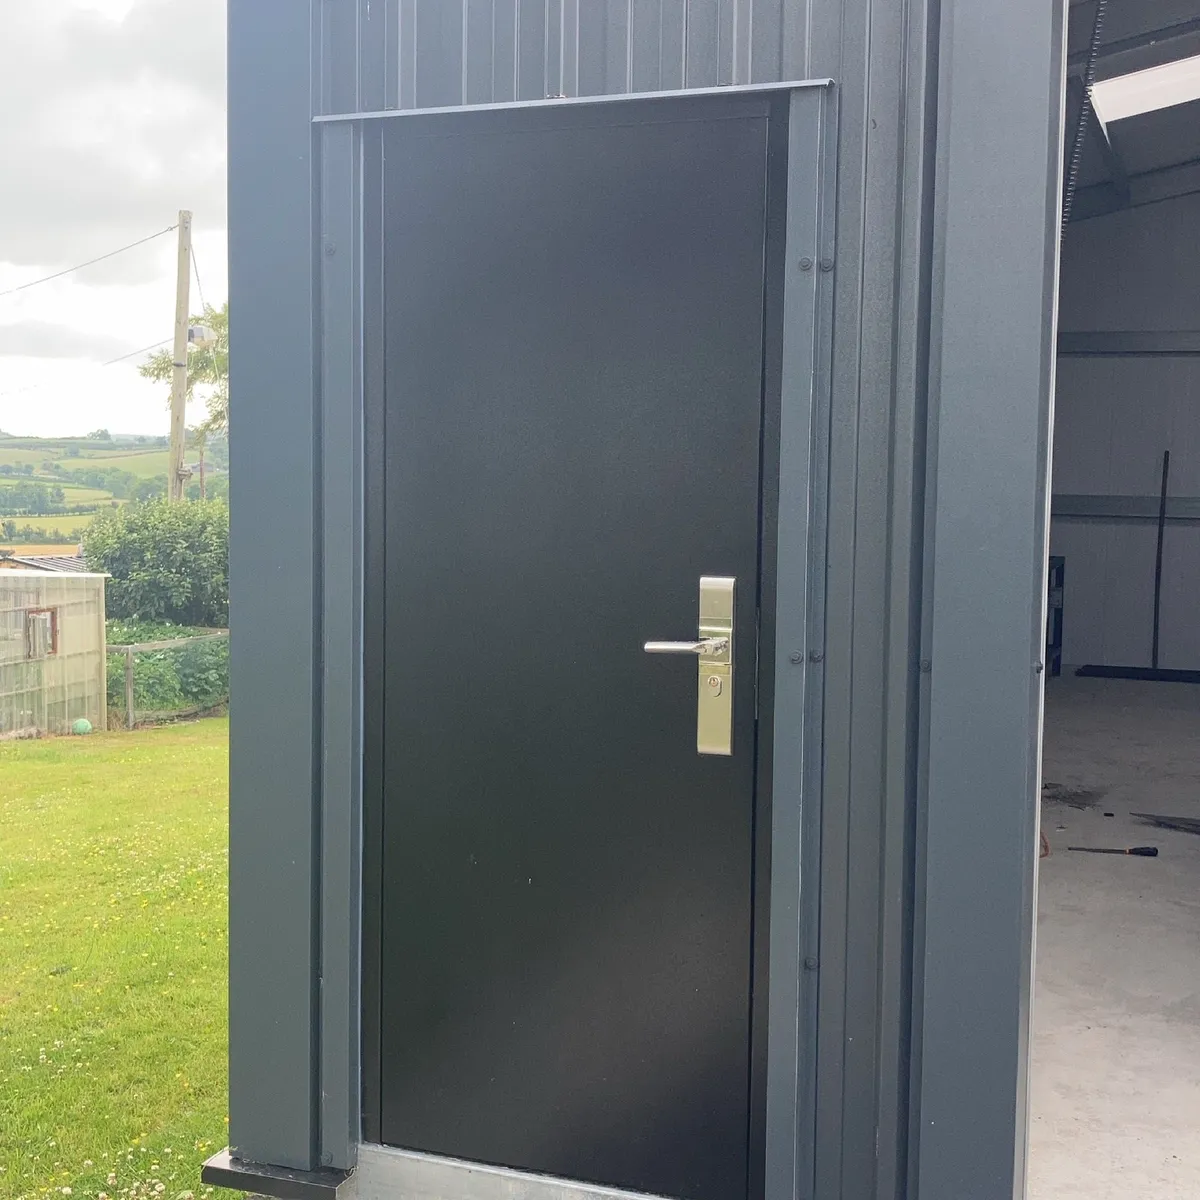 Steel Security Doors - Image 1